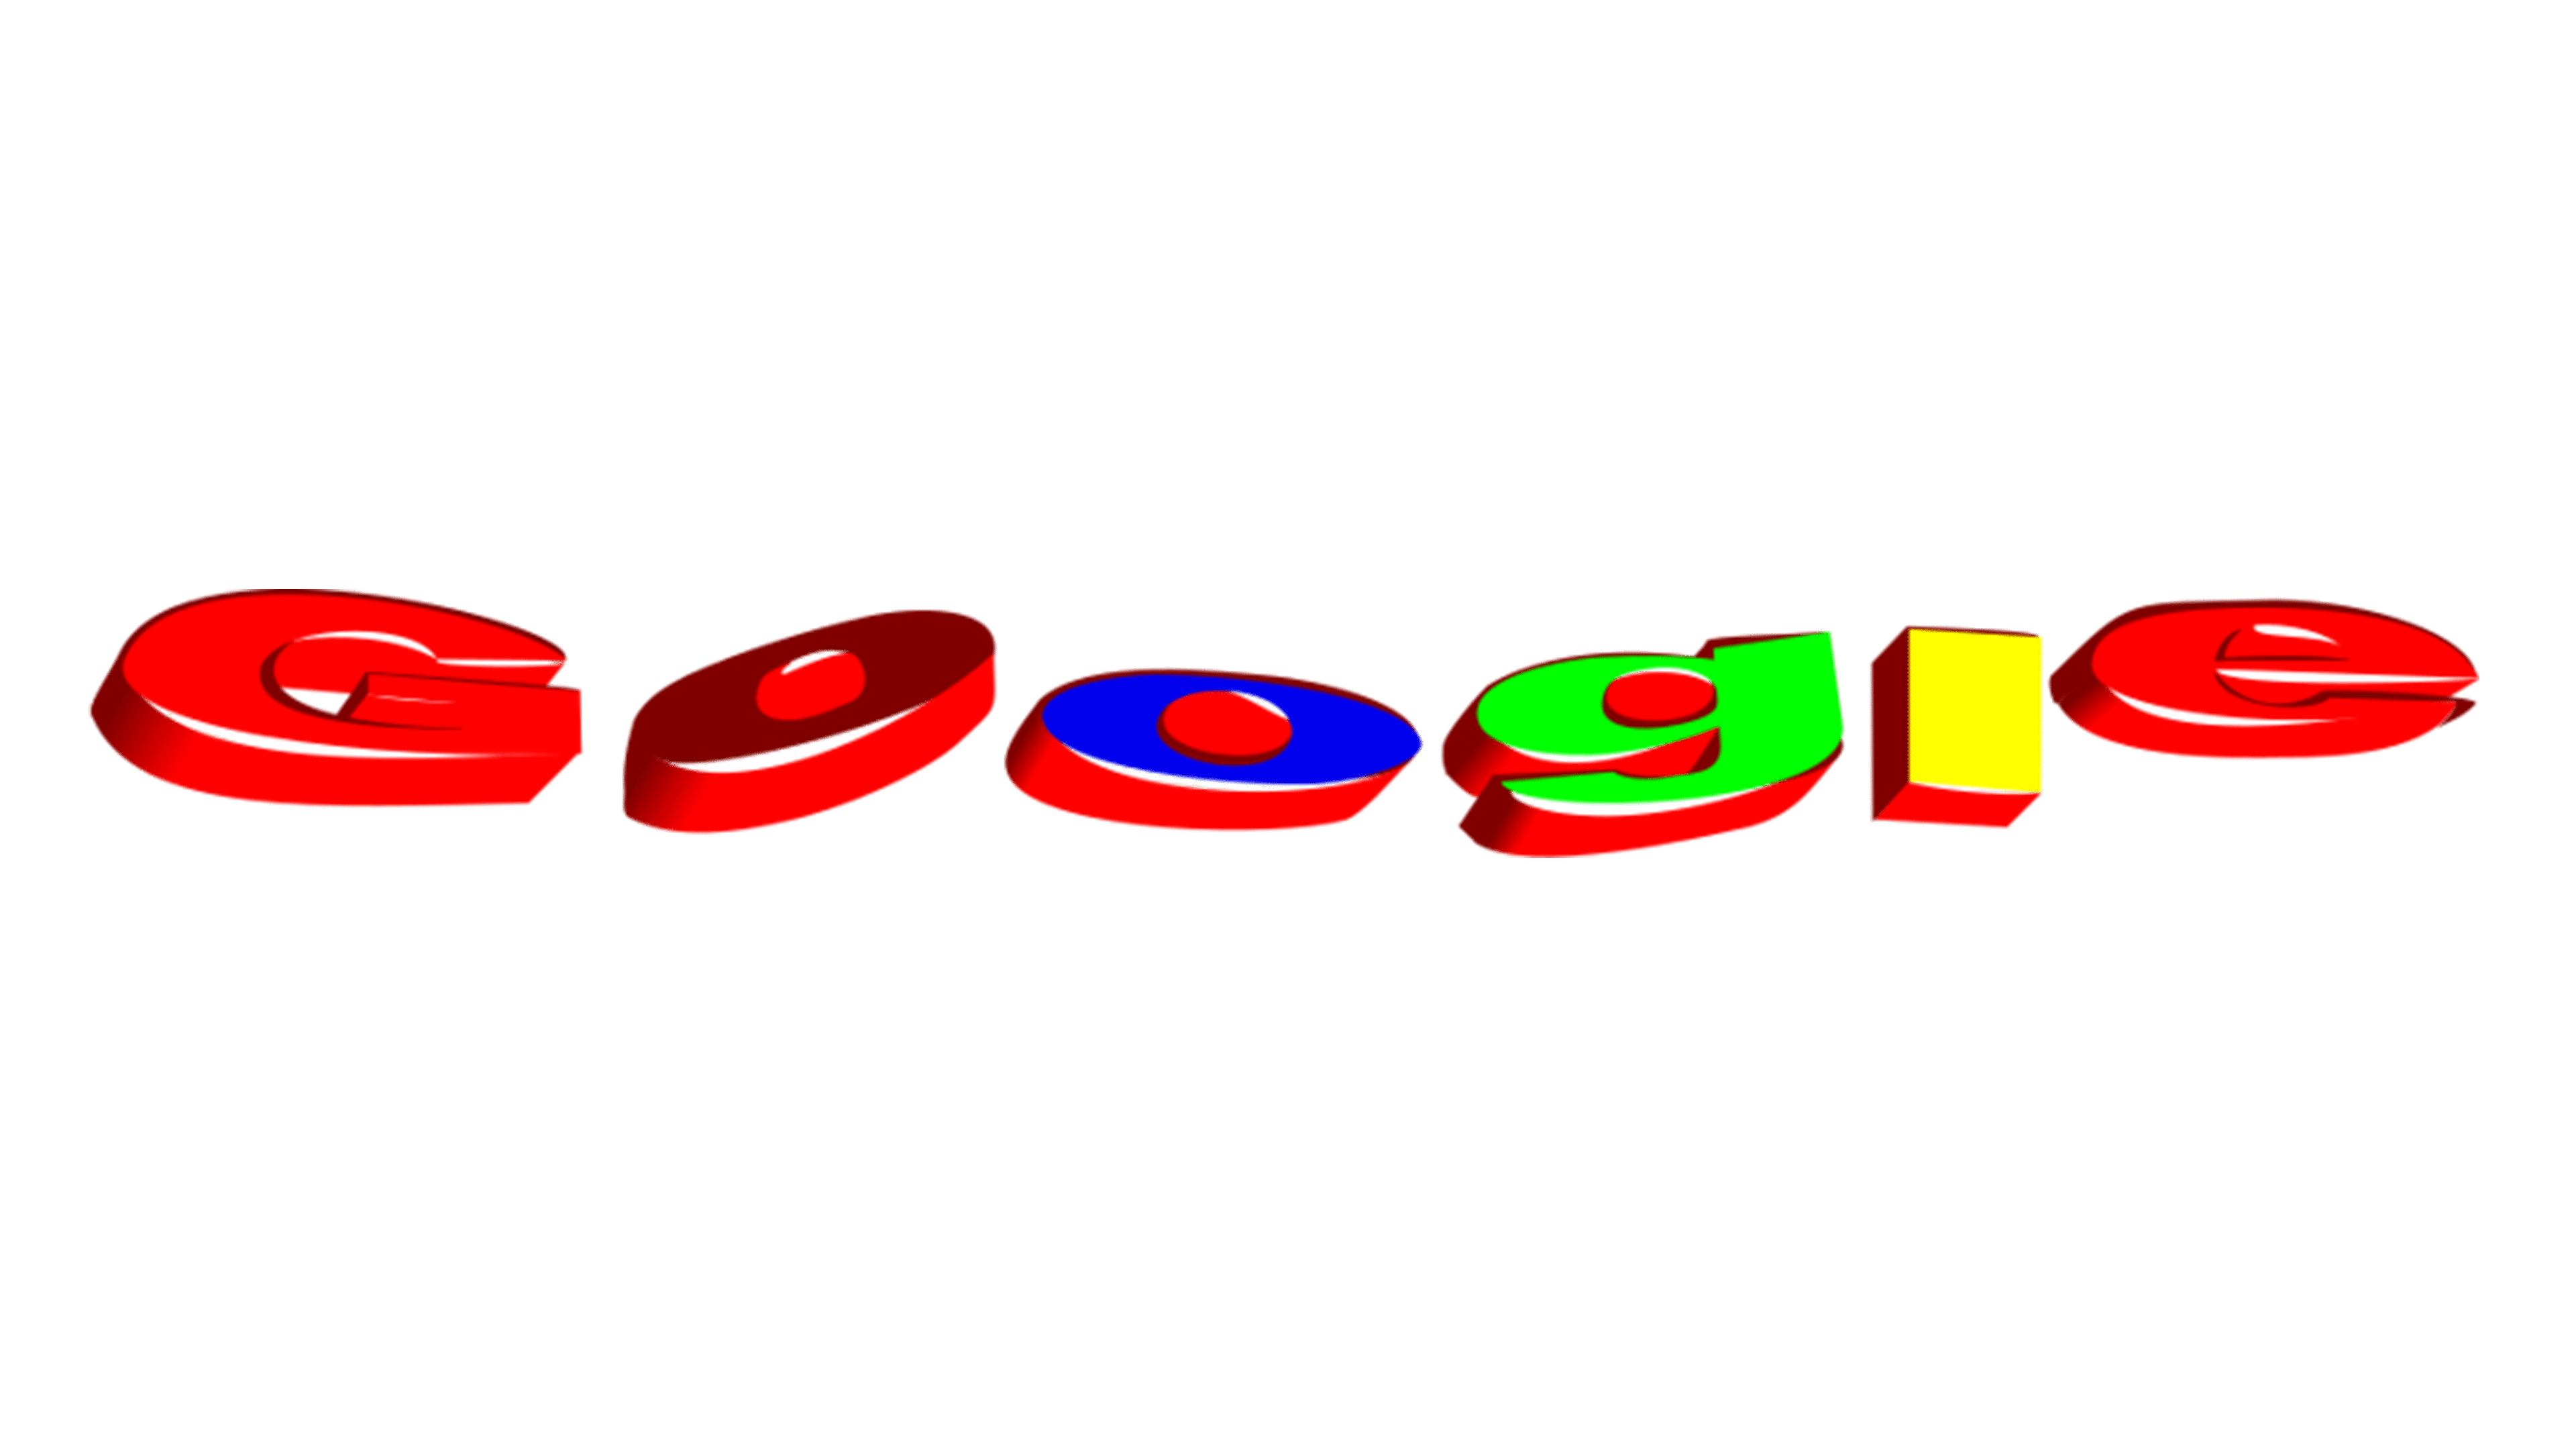 google logo maker online